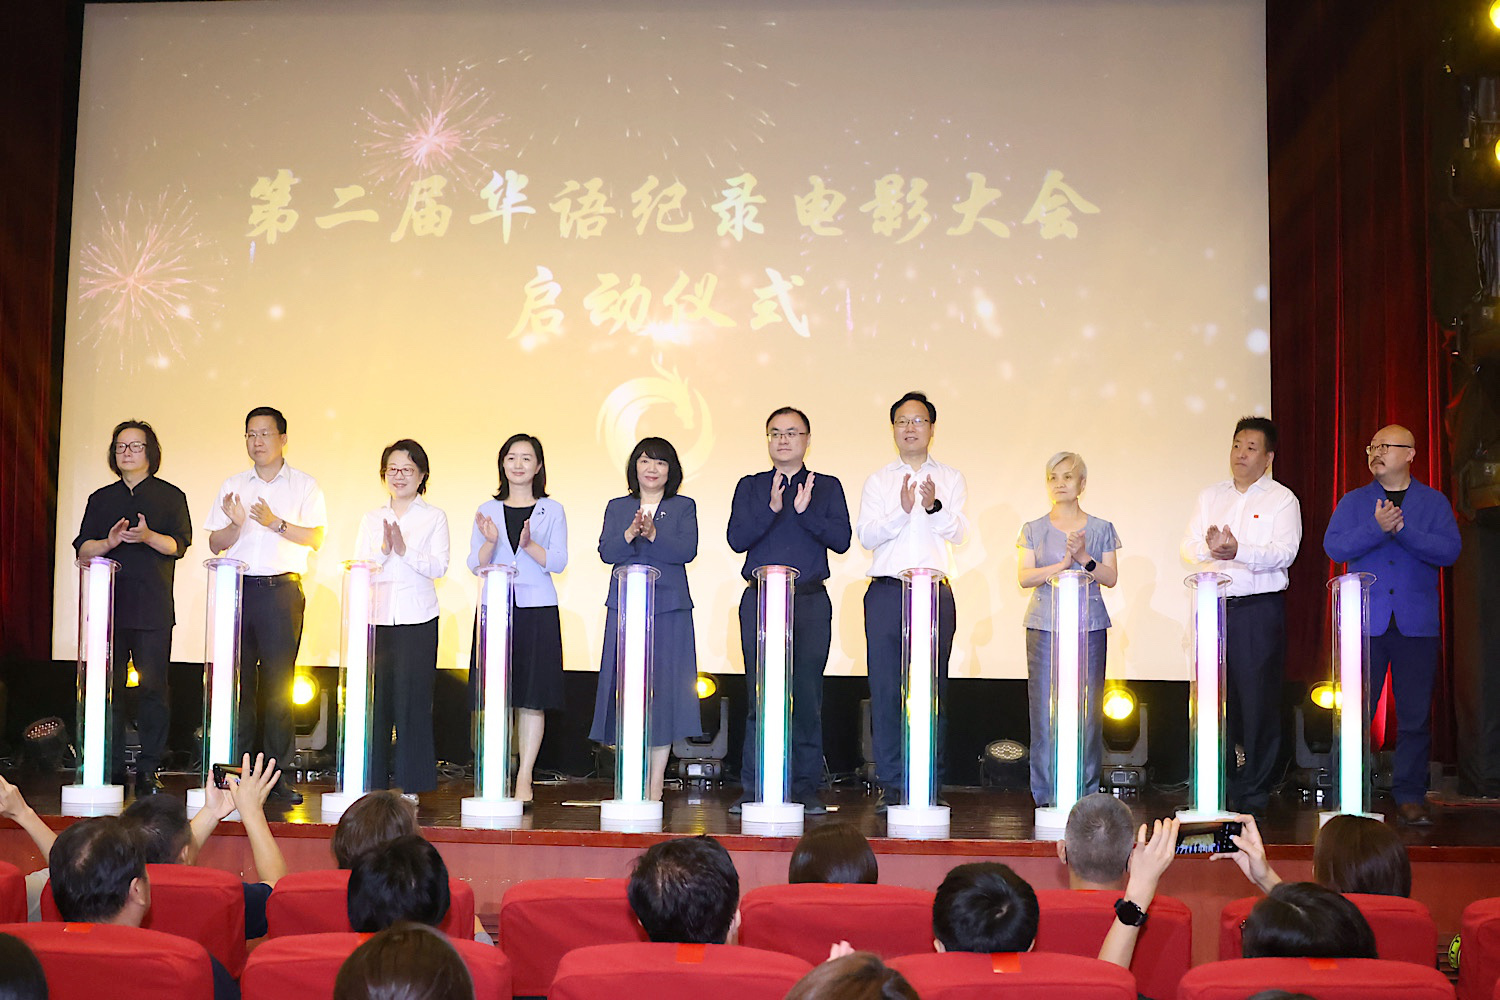 第二届华语纪录电影大会启动 将于11.16-18举行